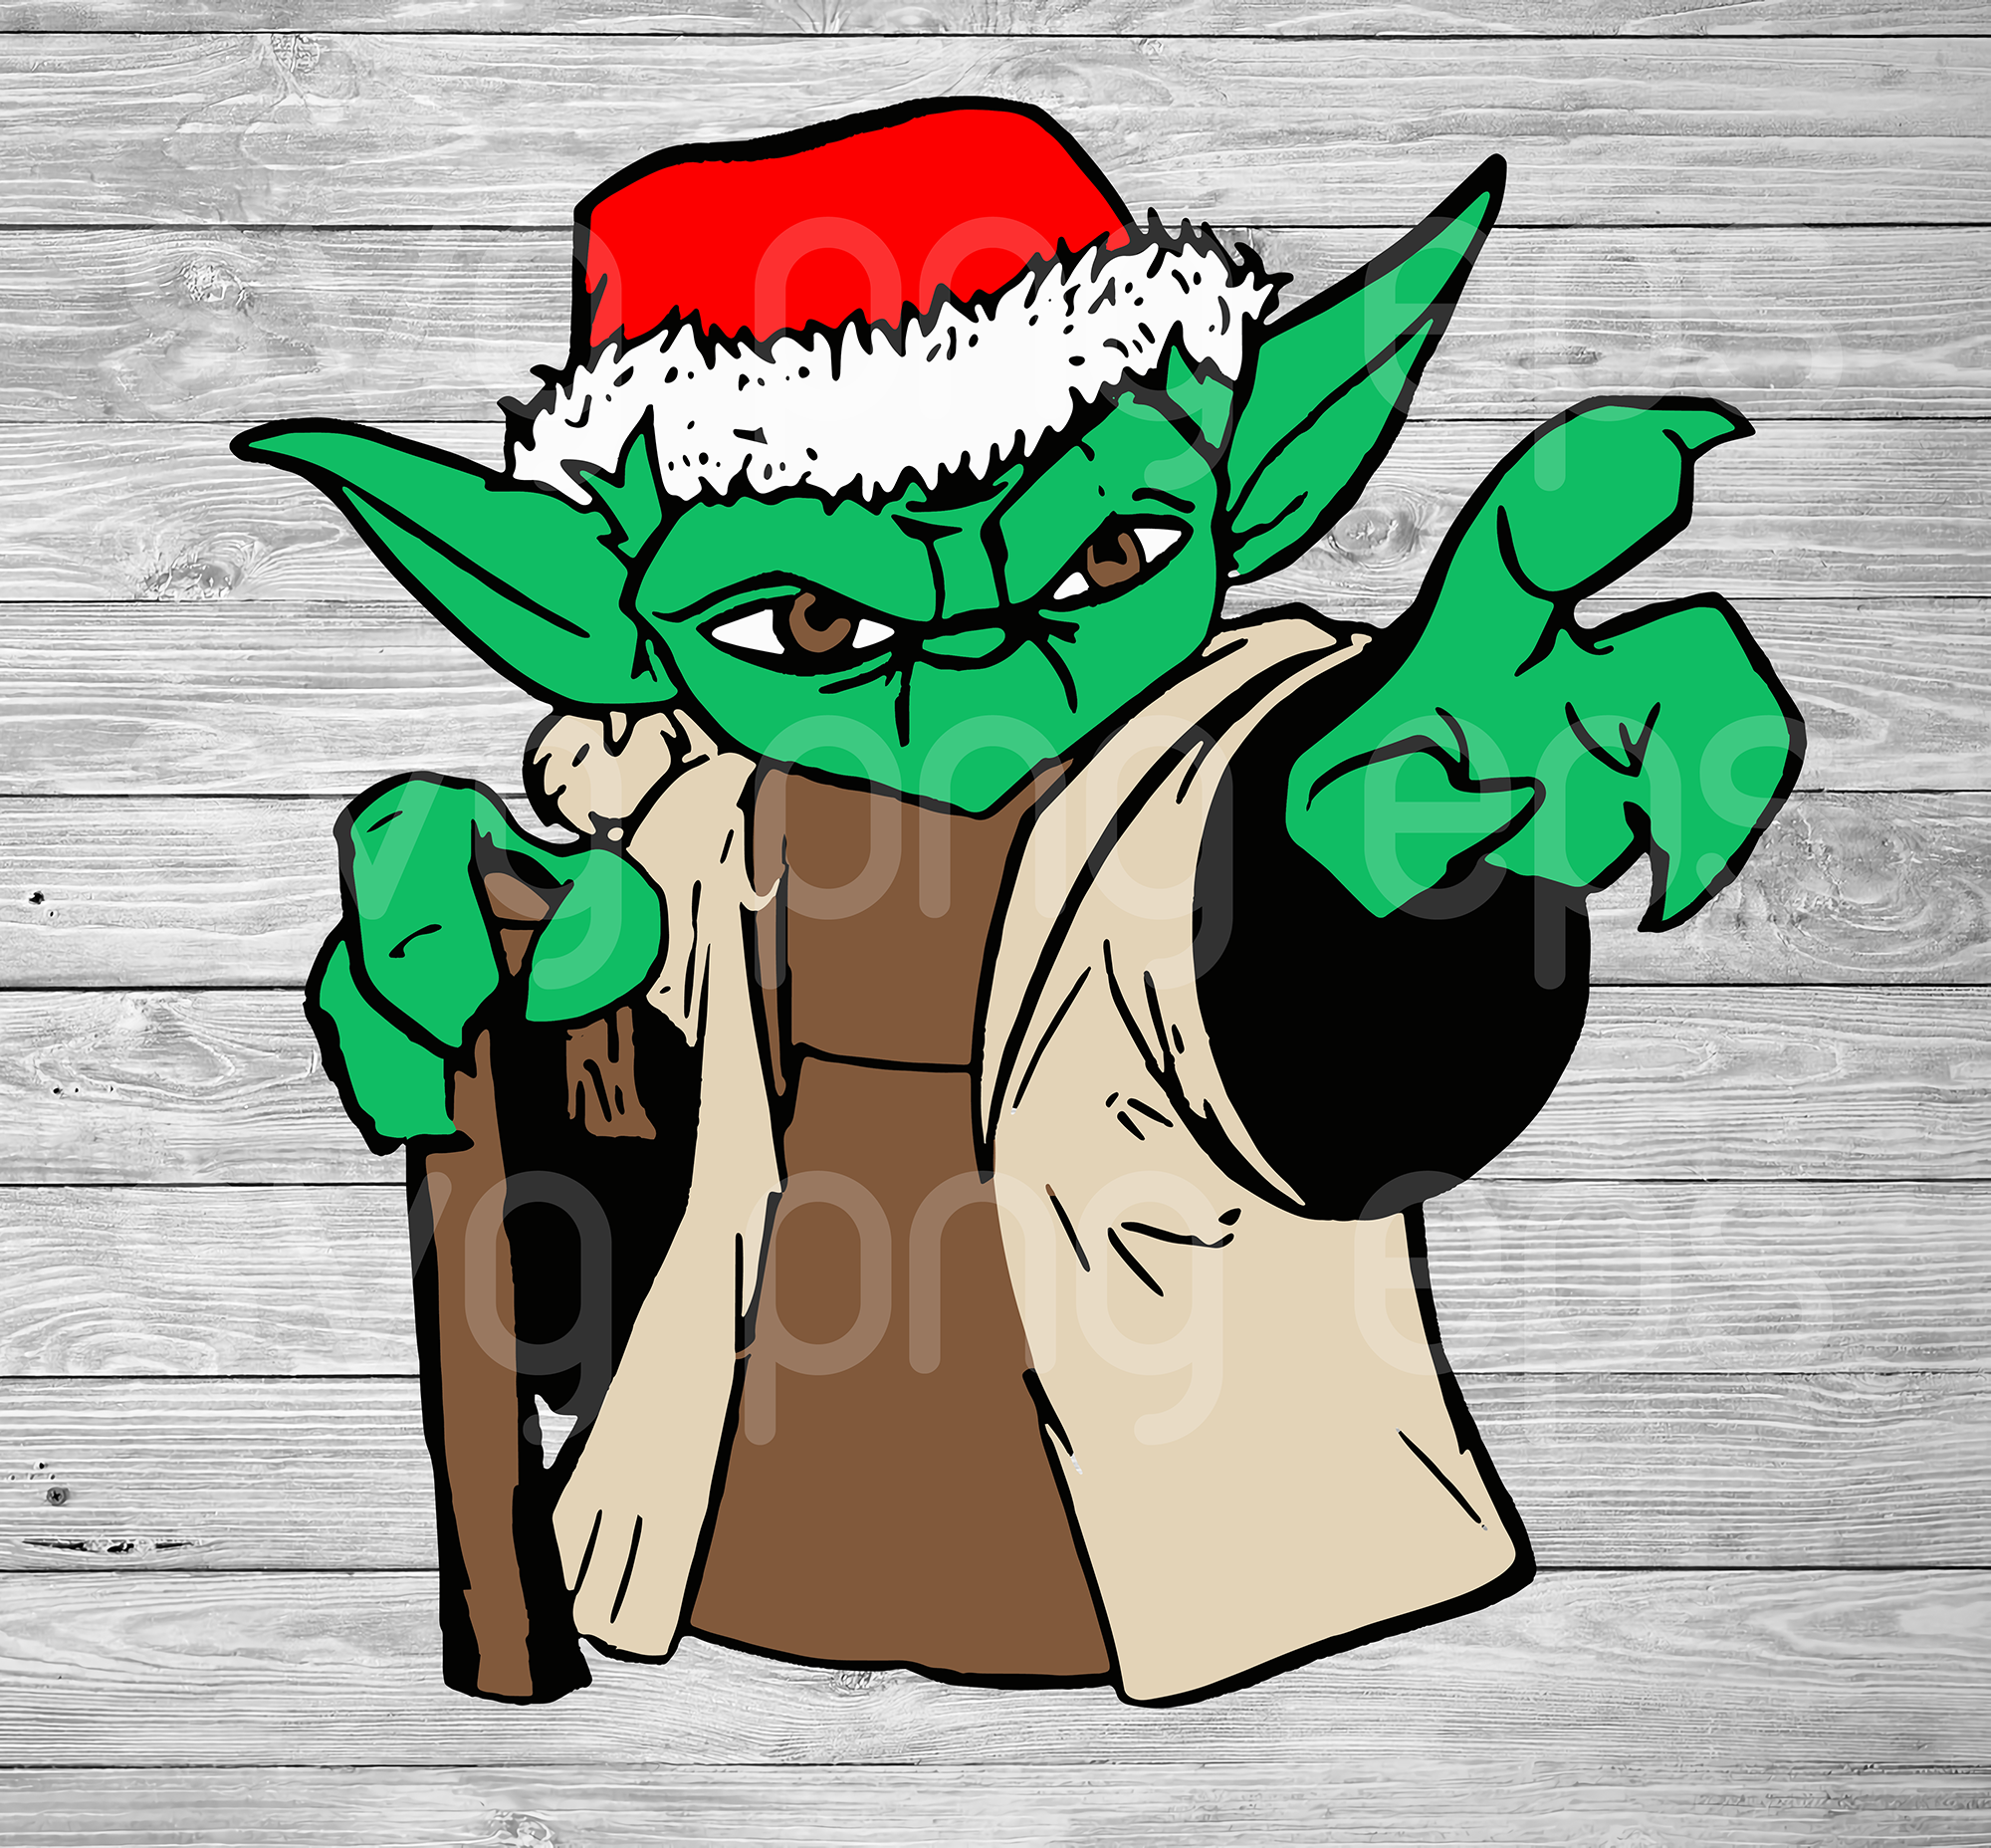 Download Yoda Santa Christmas Svg Yoda Clipart Yoda Clipart Yoda Cutting Fil Beetanosvg Scalable Vector Graphics